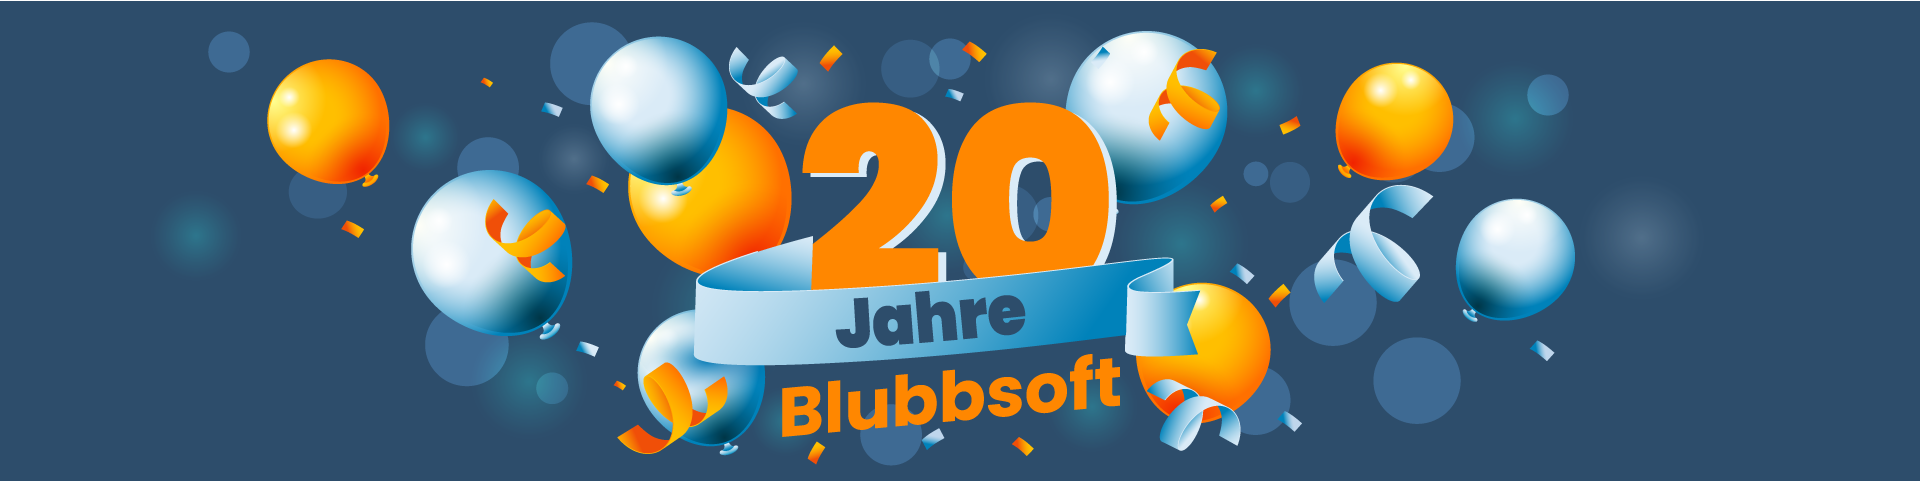 Blubbsoft feiert 20-jähriges Bestehen: Mit Luftballons und Konfetti